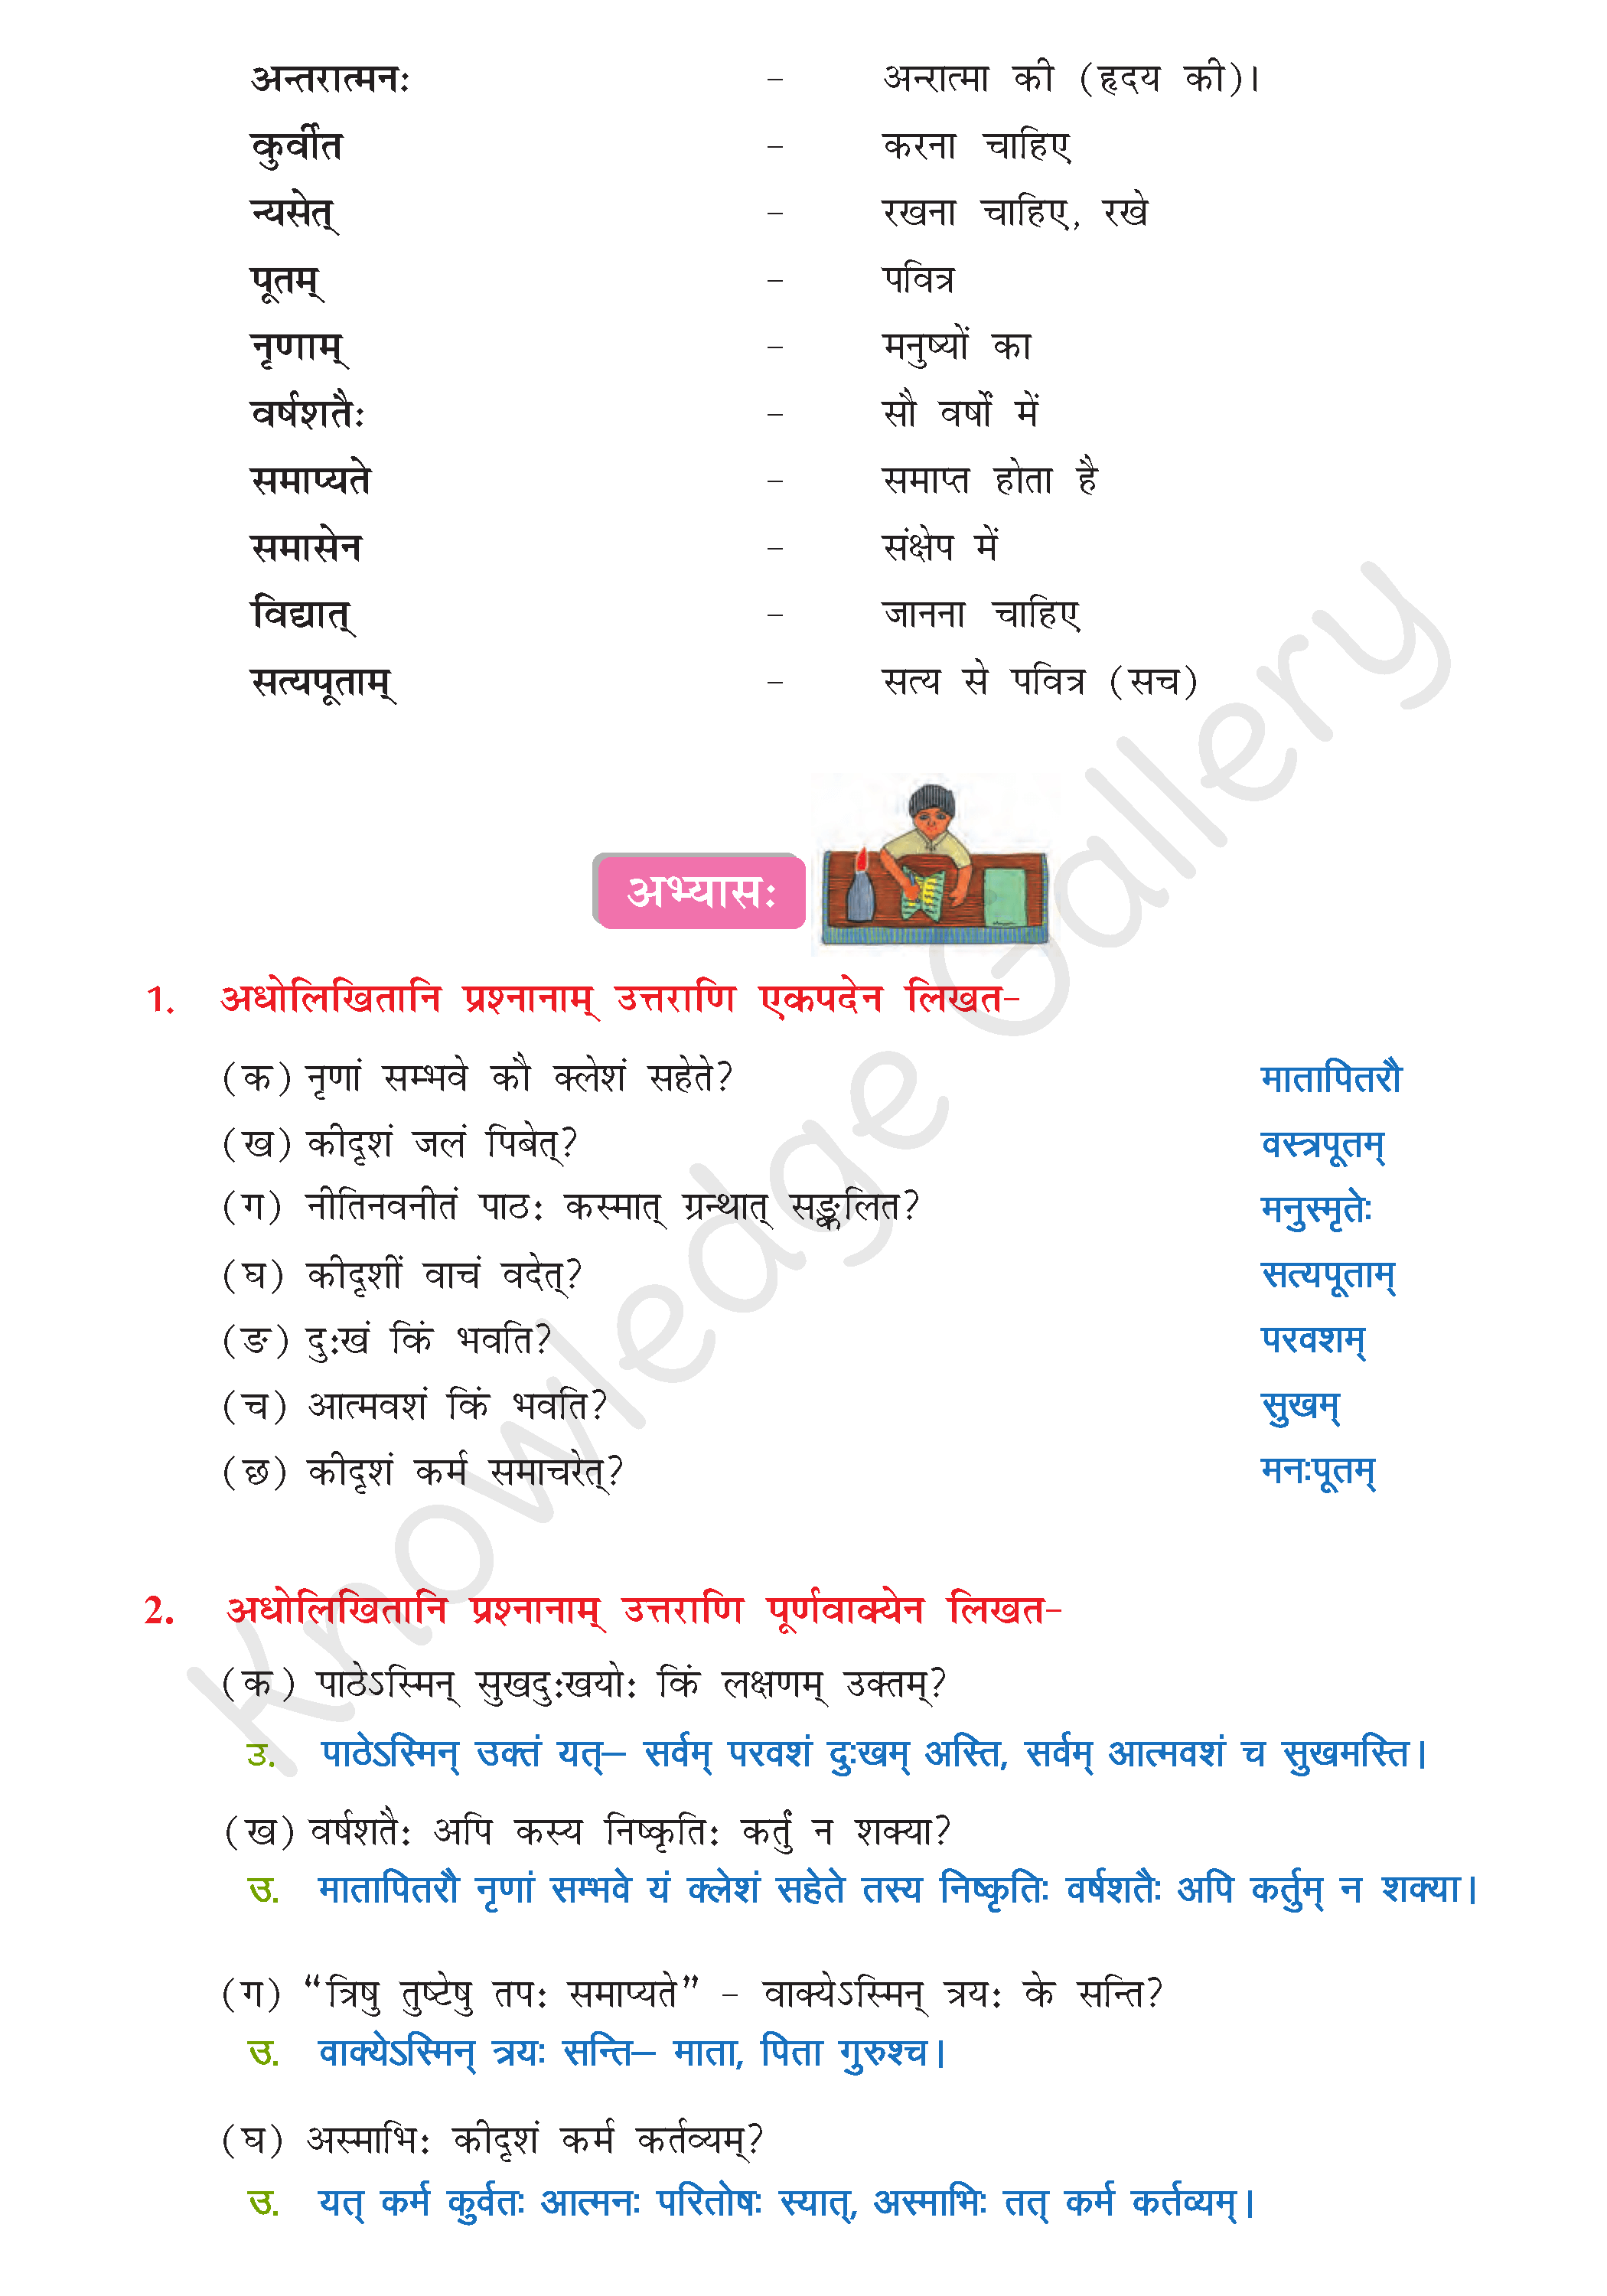 NCERT Solution For Class 8 Sanskrit Chapter 10 part 3